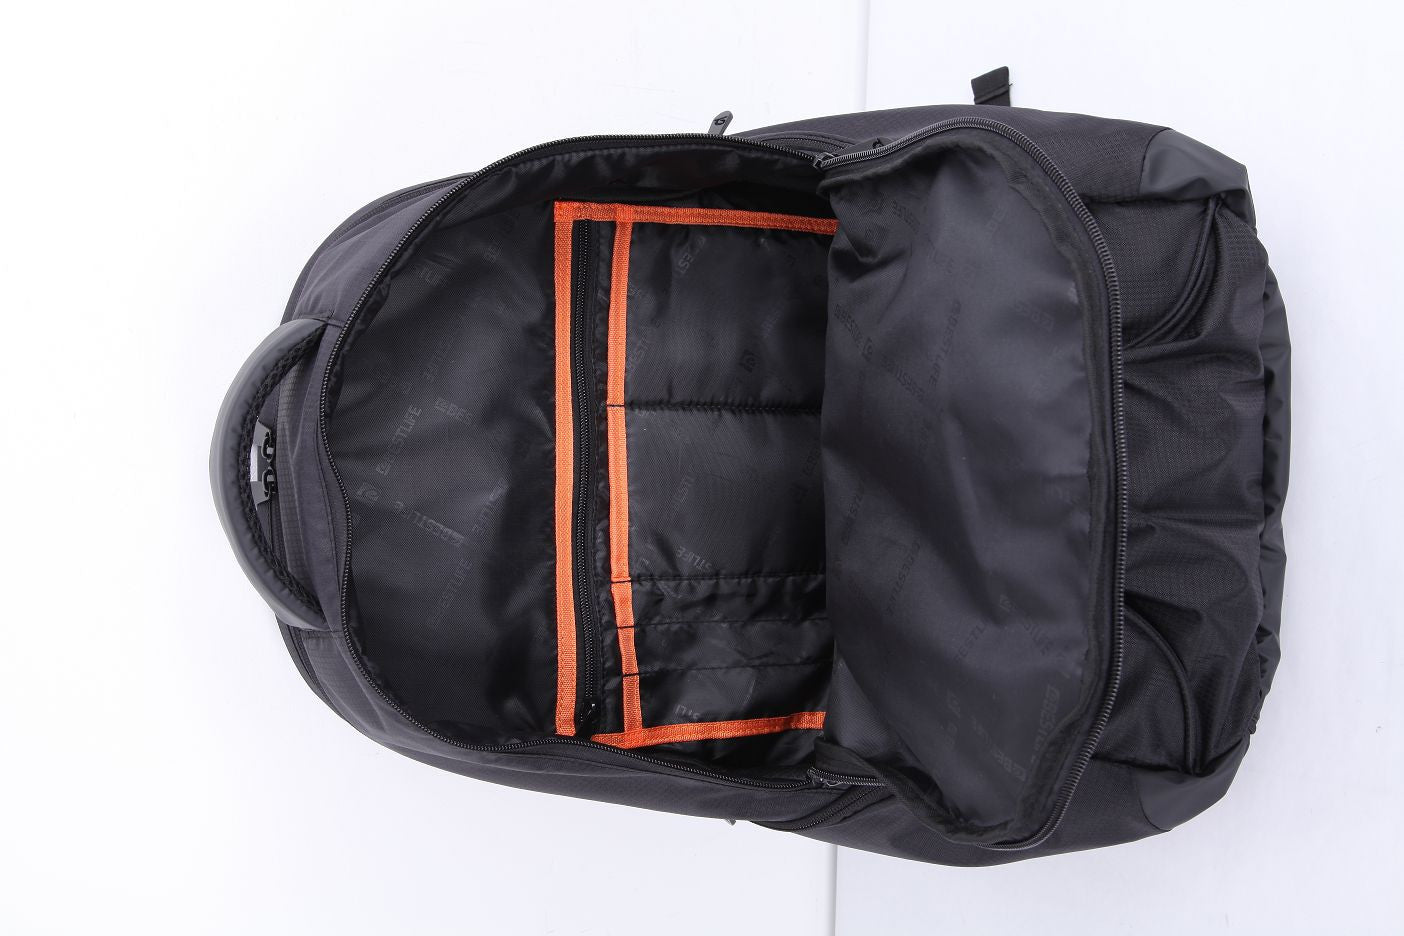 Bestlife Backpack BLB-3073G-15.6'' (Black and Grey) - OBM Distribution, Inc.